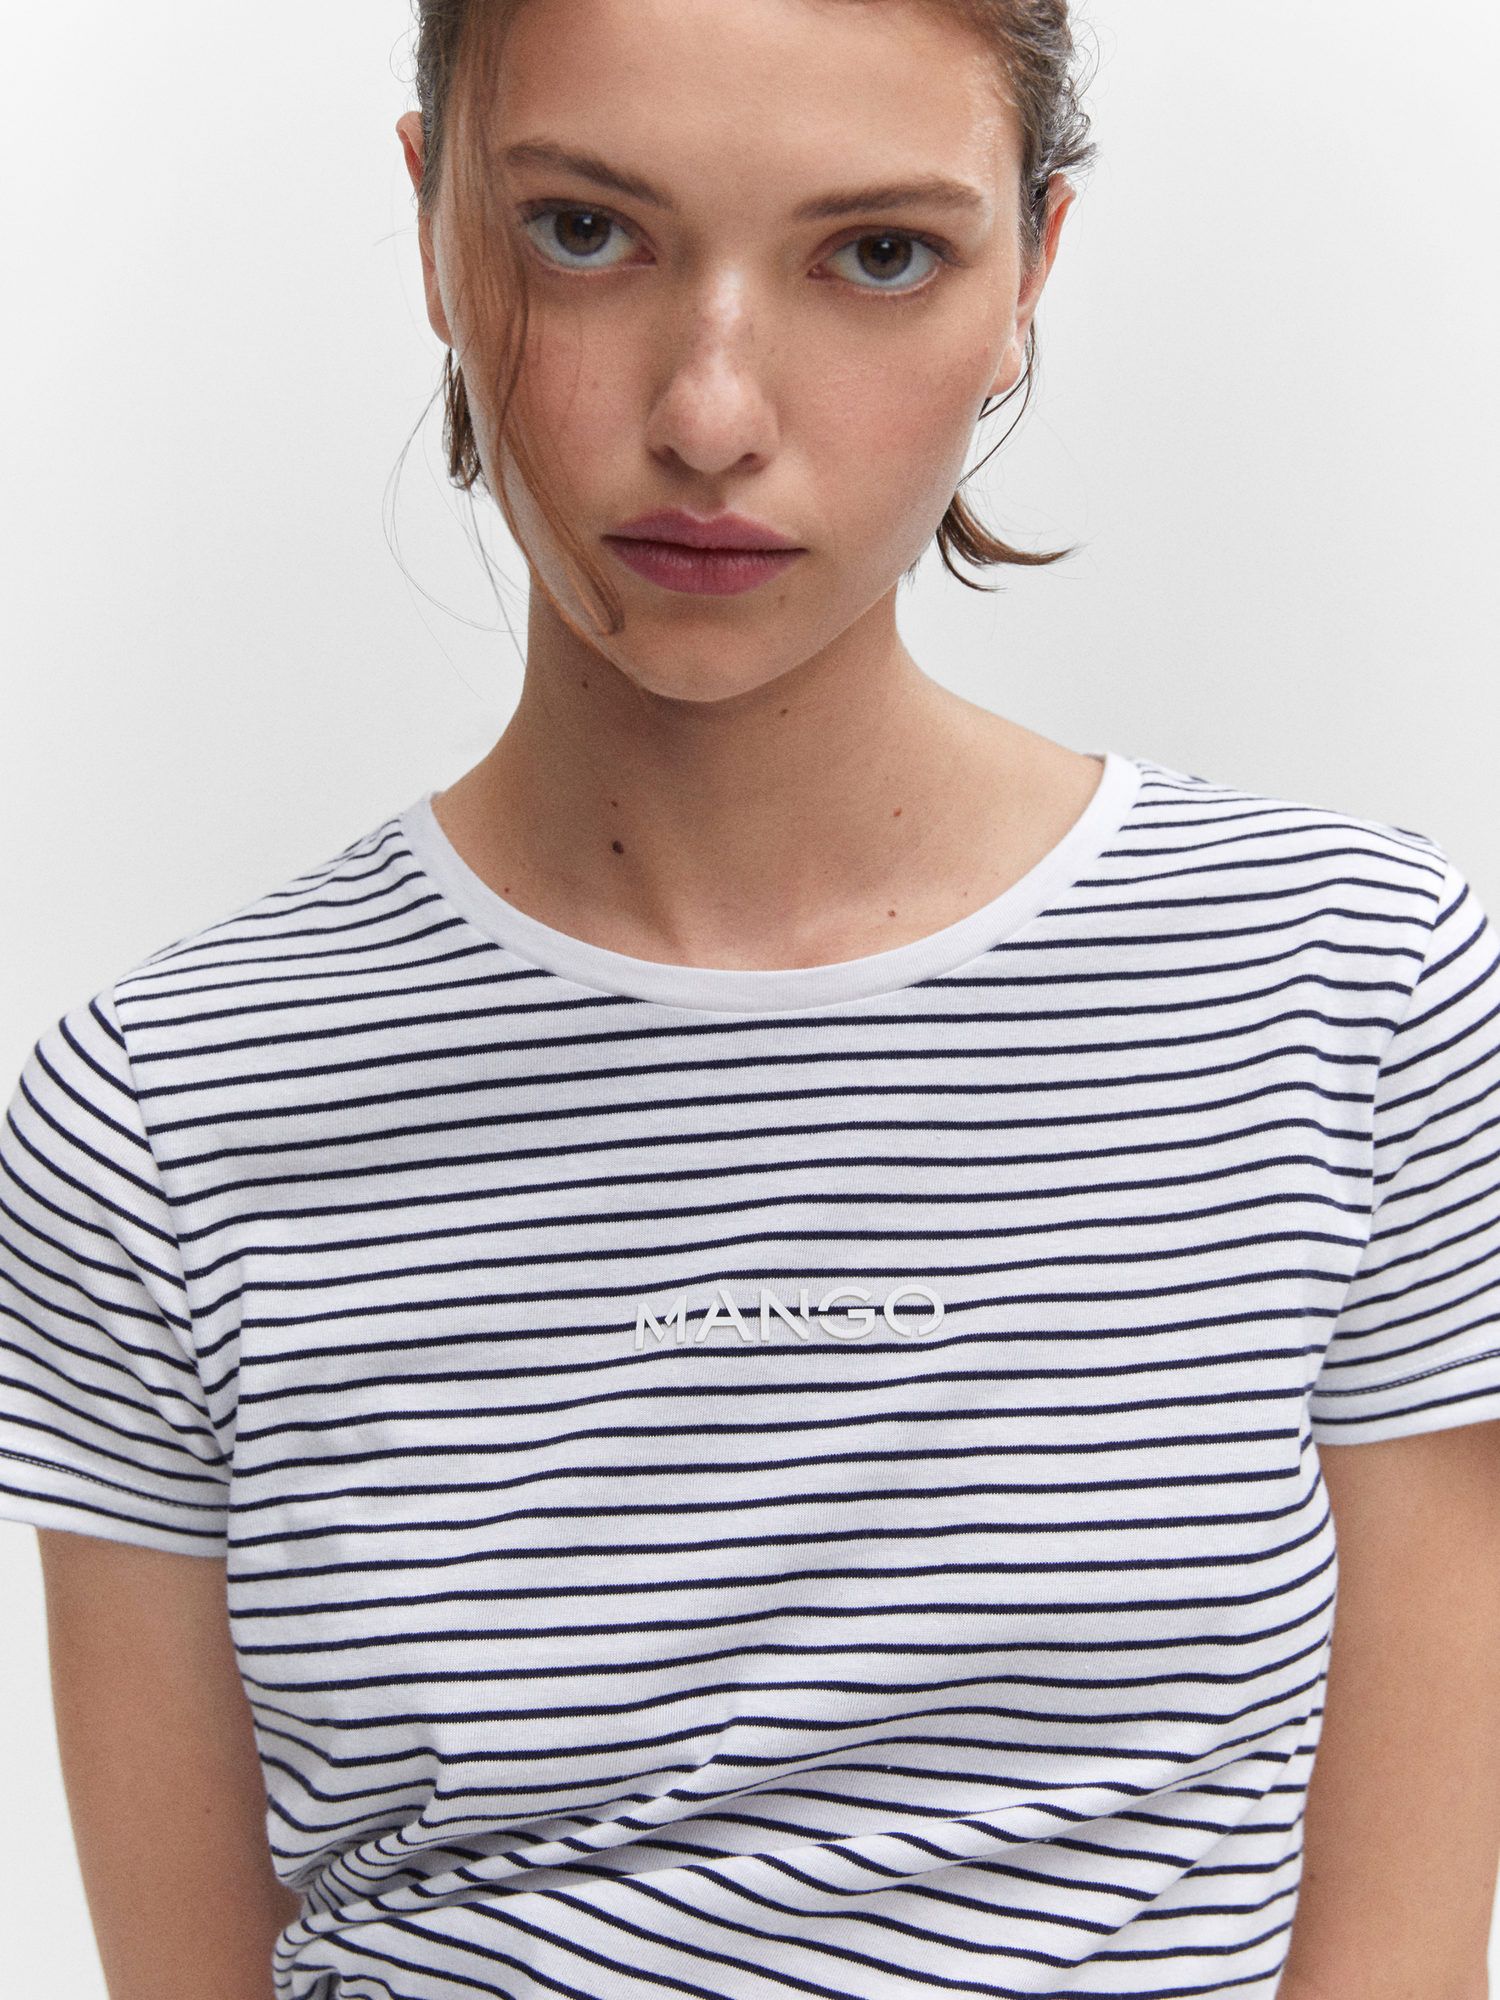 Mango Striped Logo T-Shirt, Navy/White at John Lewis & Partners